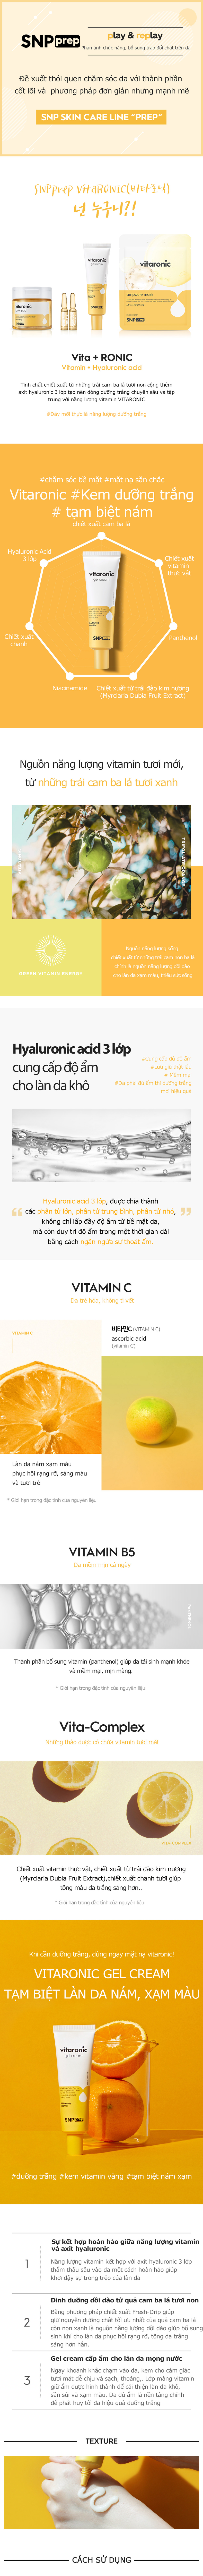 Kem dạng gel dưỡng trắng vitaronic- VITARONIC GEL CREAM